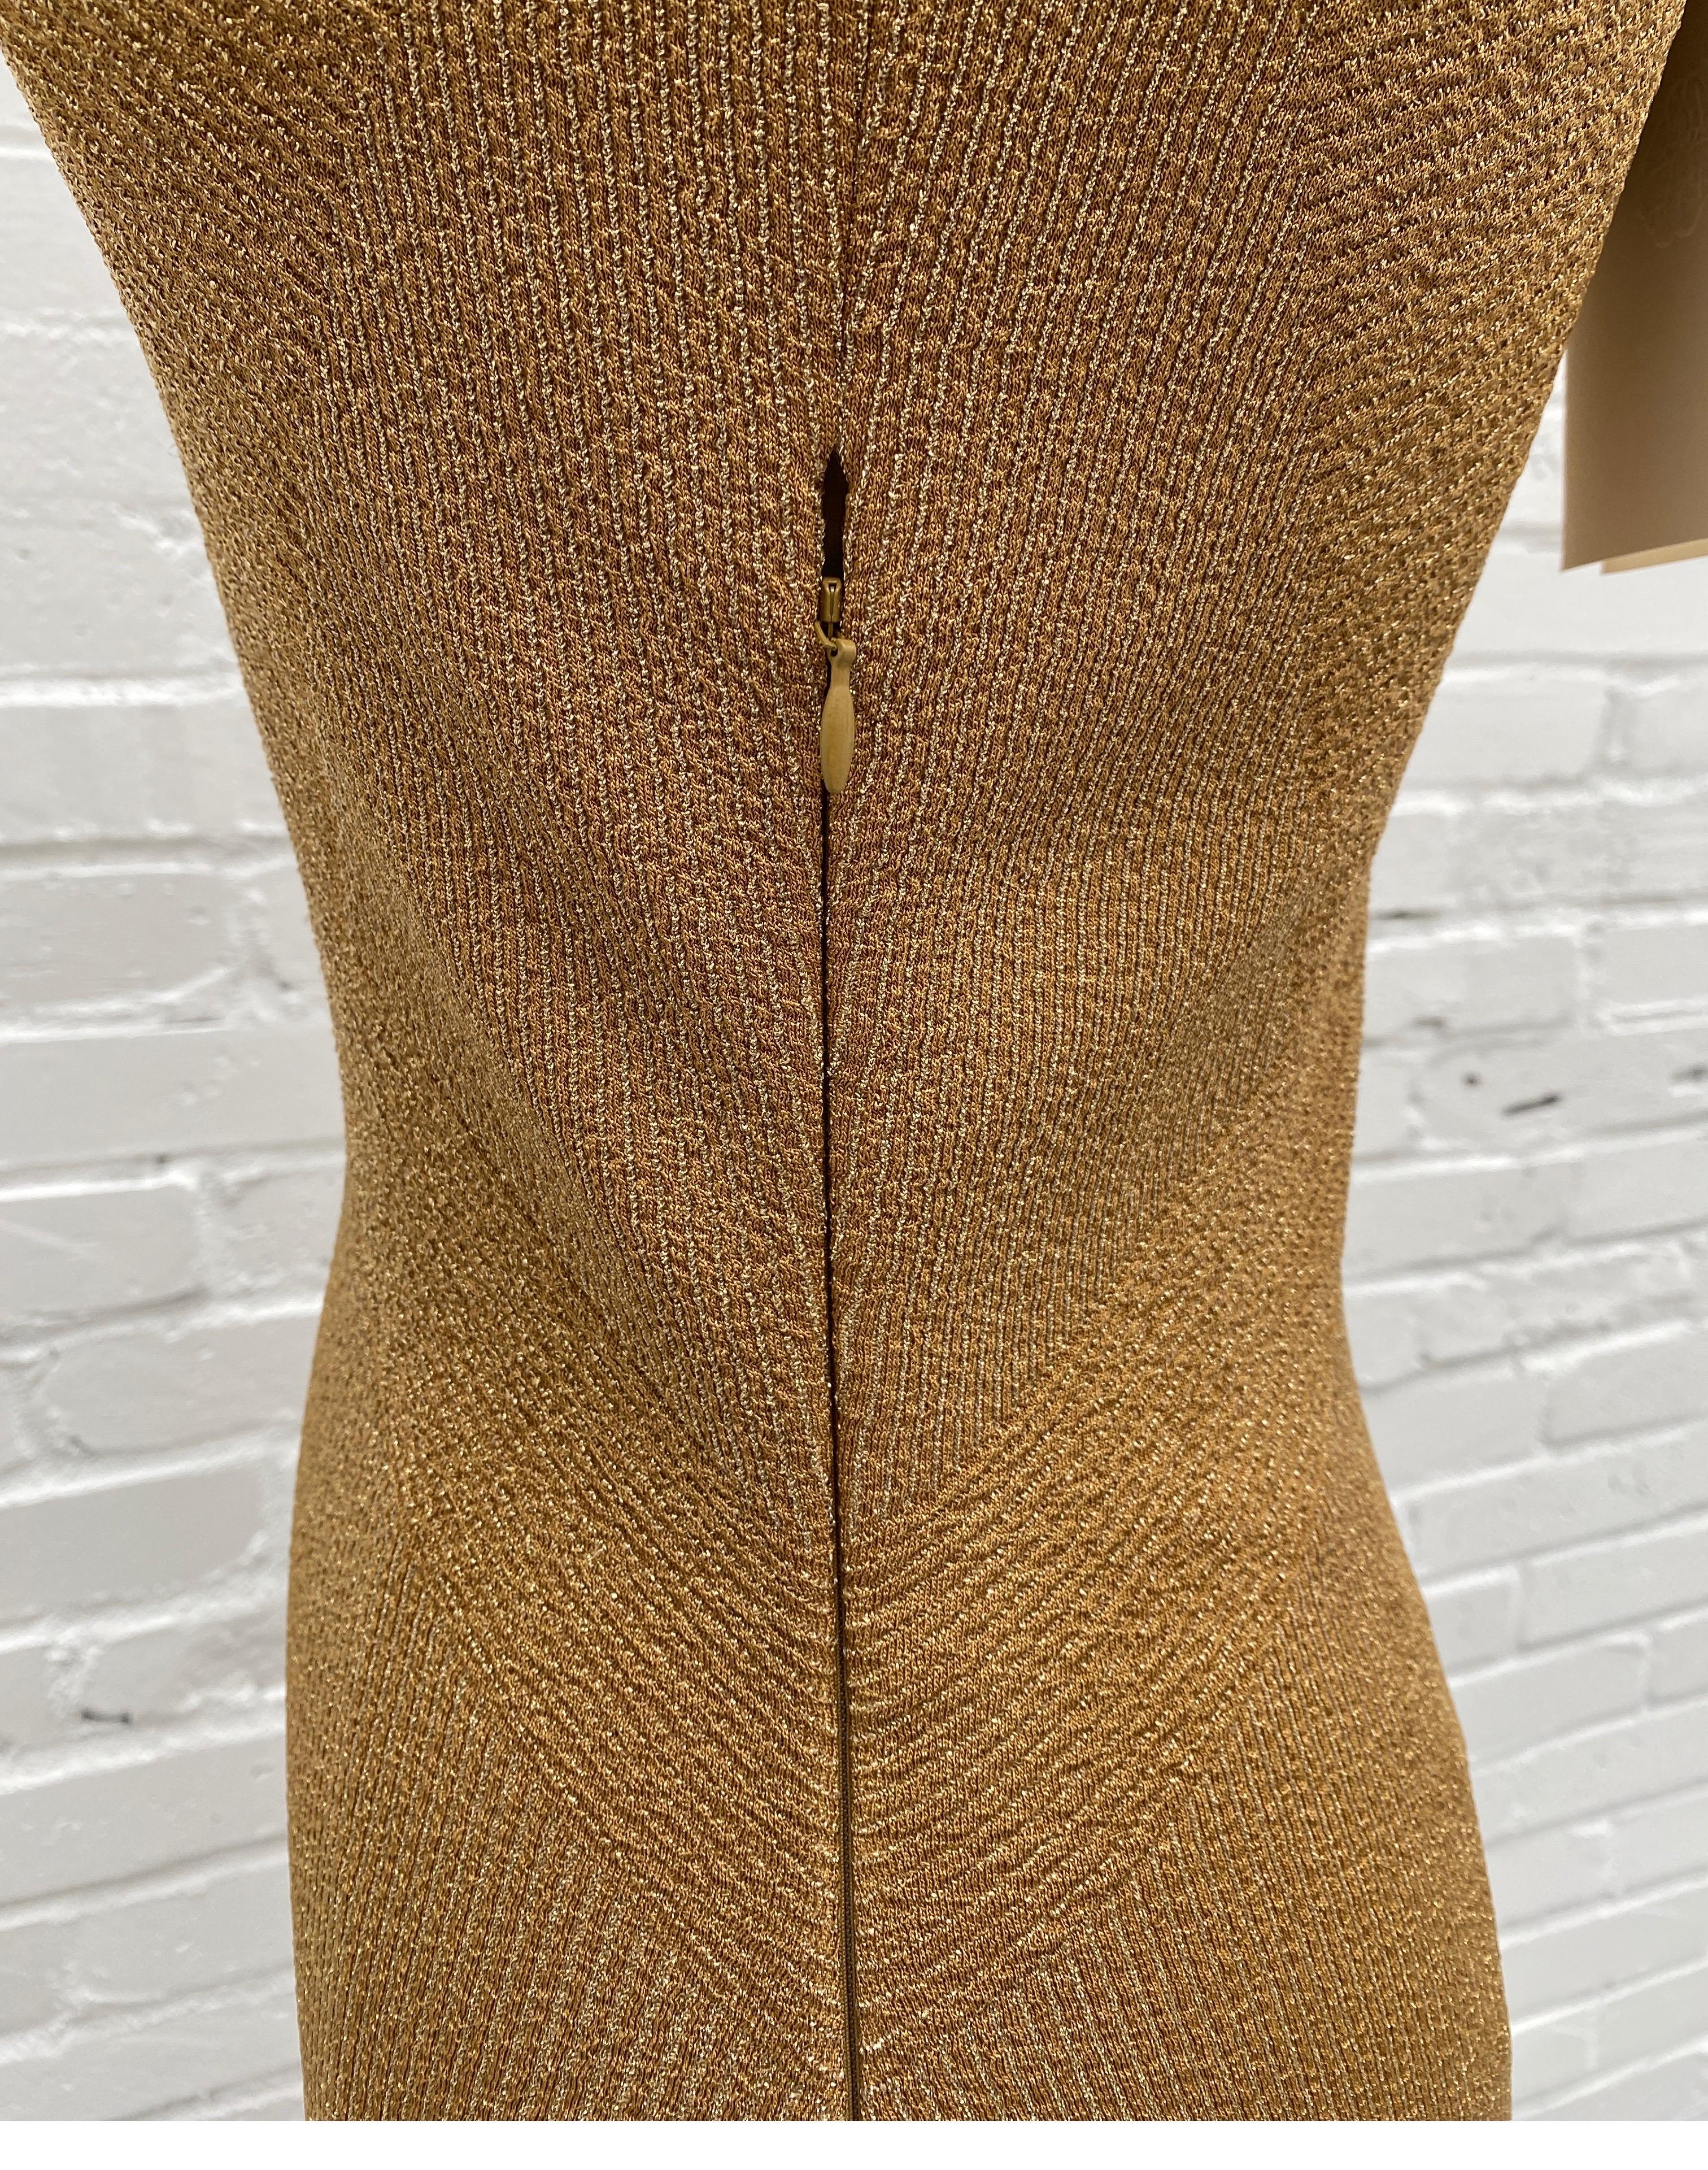 Women's or Men's Alexander McQueen Gold Knit Evening Dress